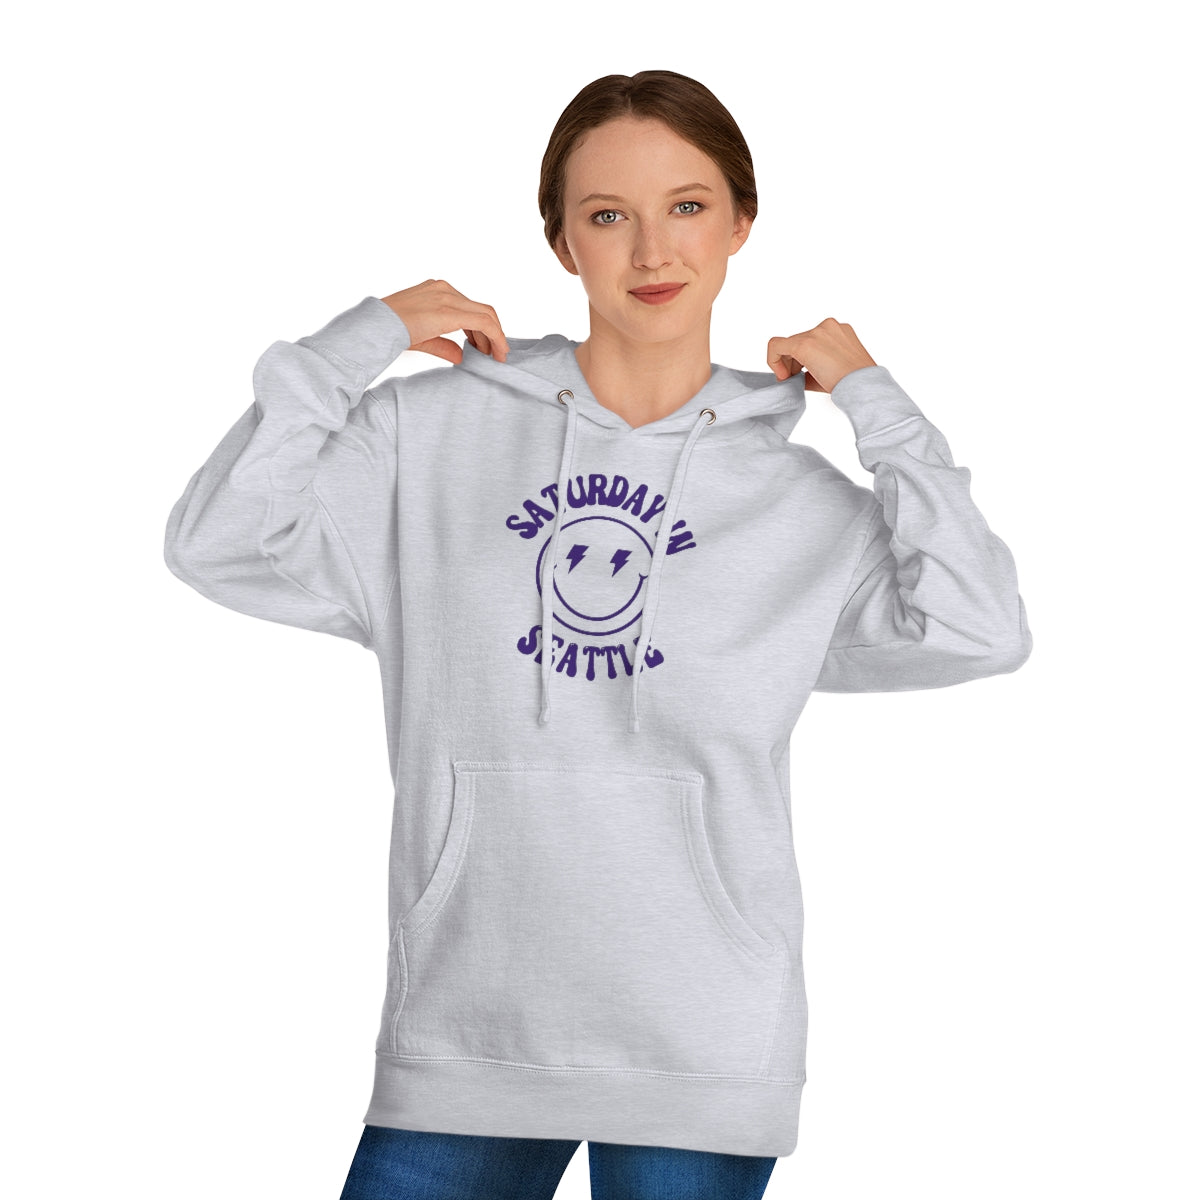 Smiley Seattle Hooded Sweatshirt - GG - ITC